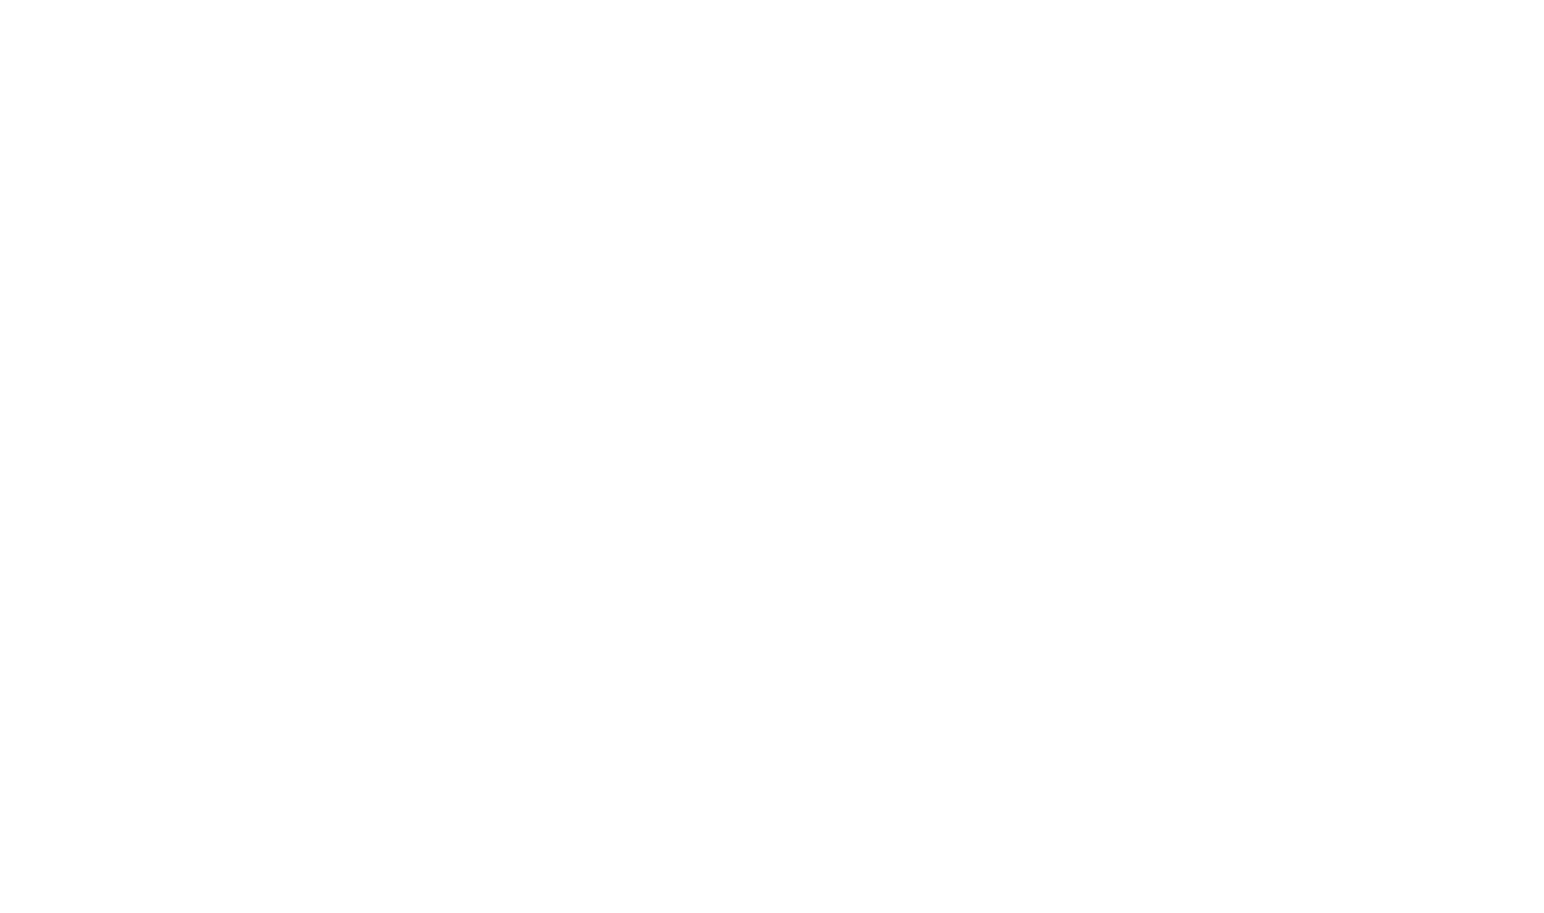 Naspers logo large for dark backgrounds (transparent PNG)